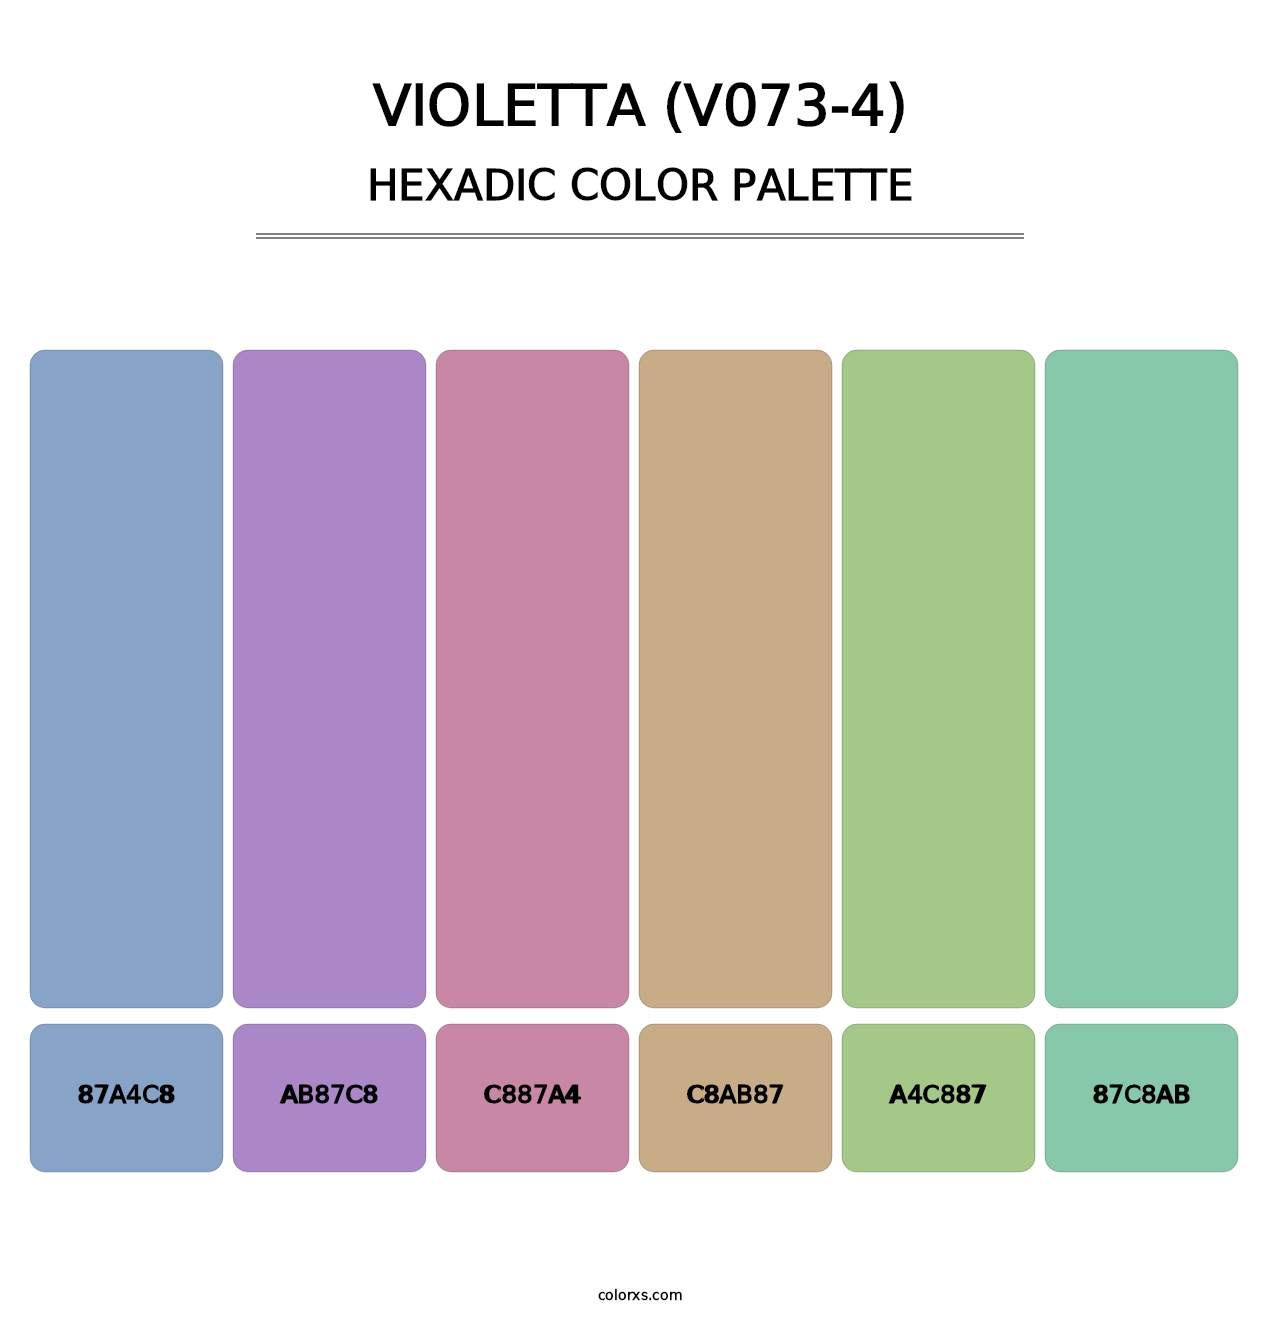 Violetta (V073-4) - Hexadic Color Palette